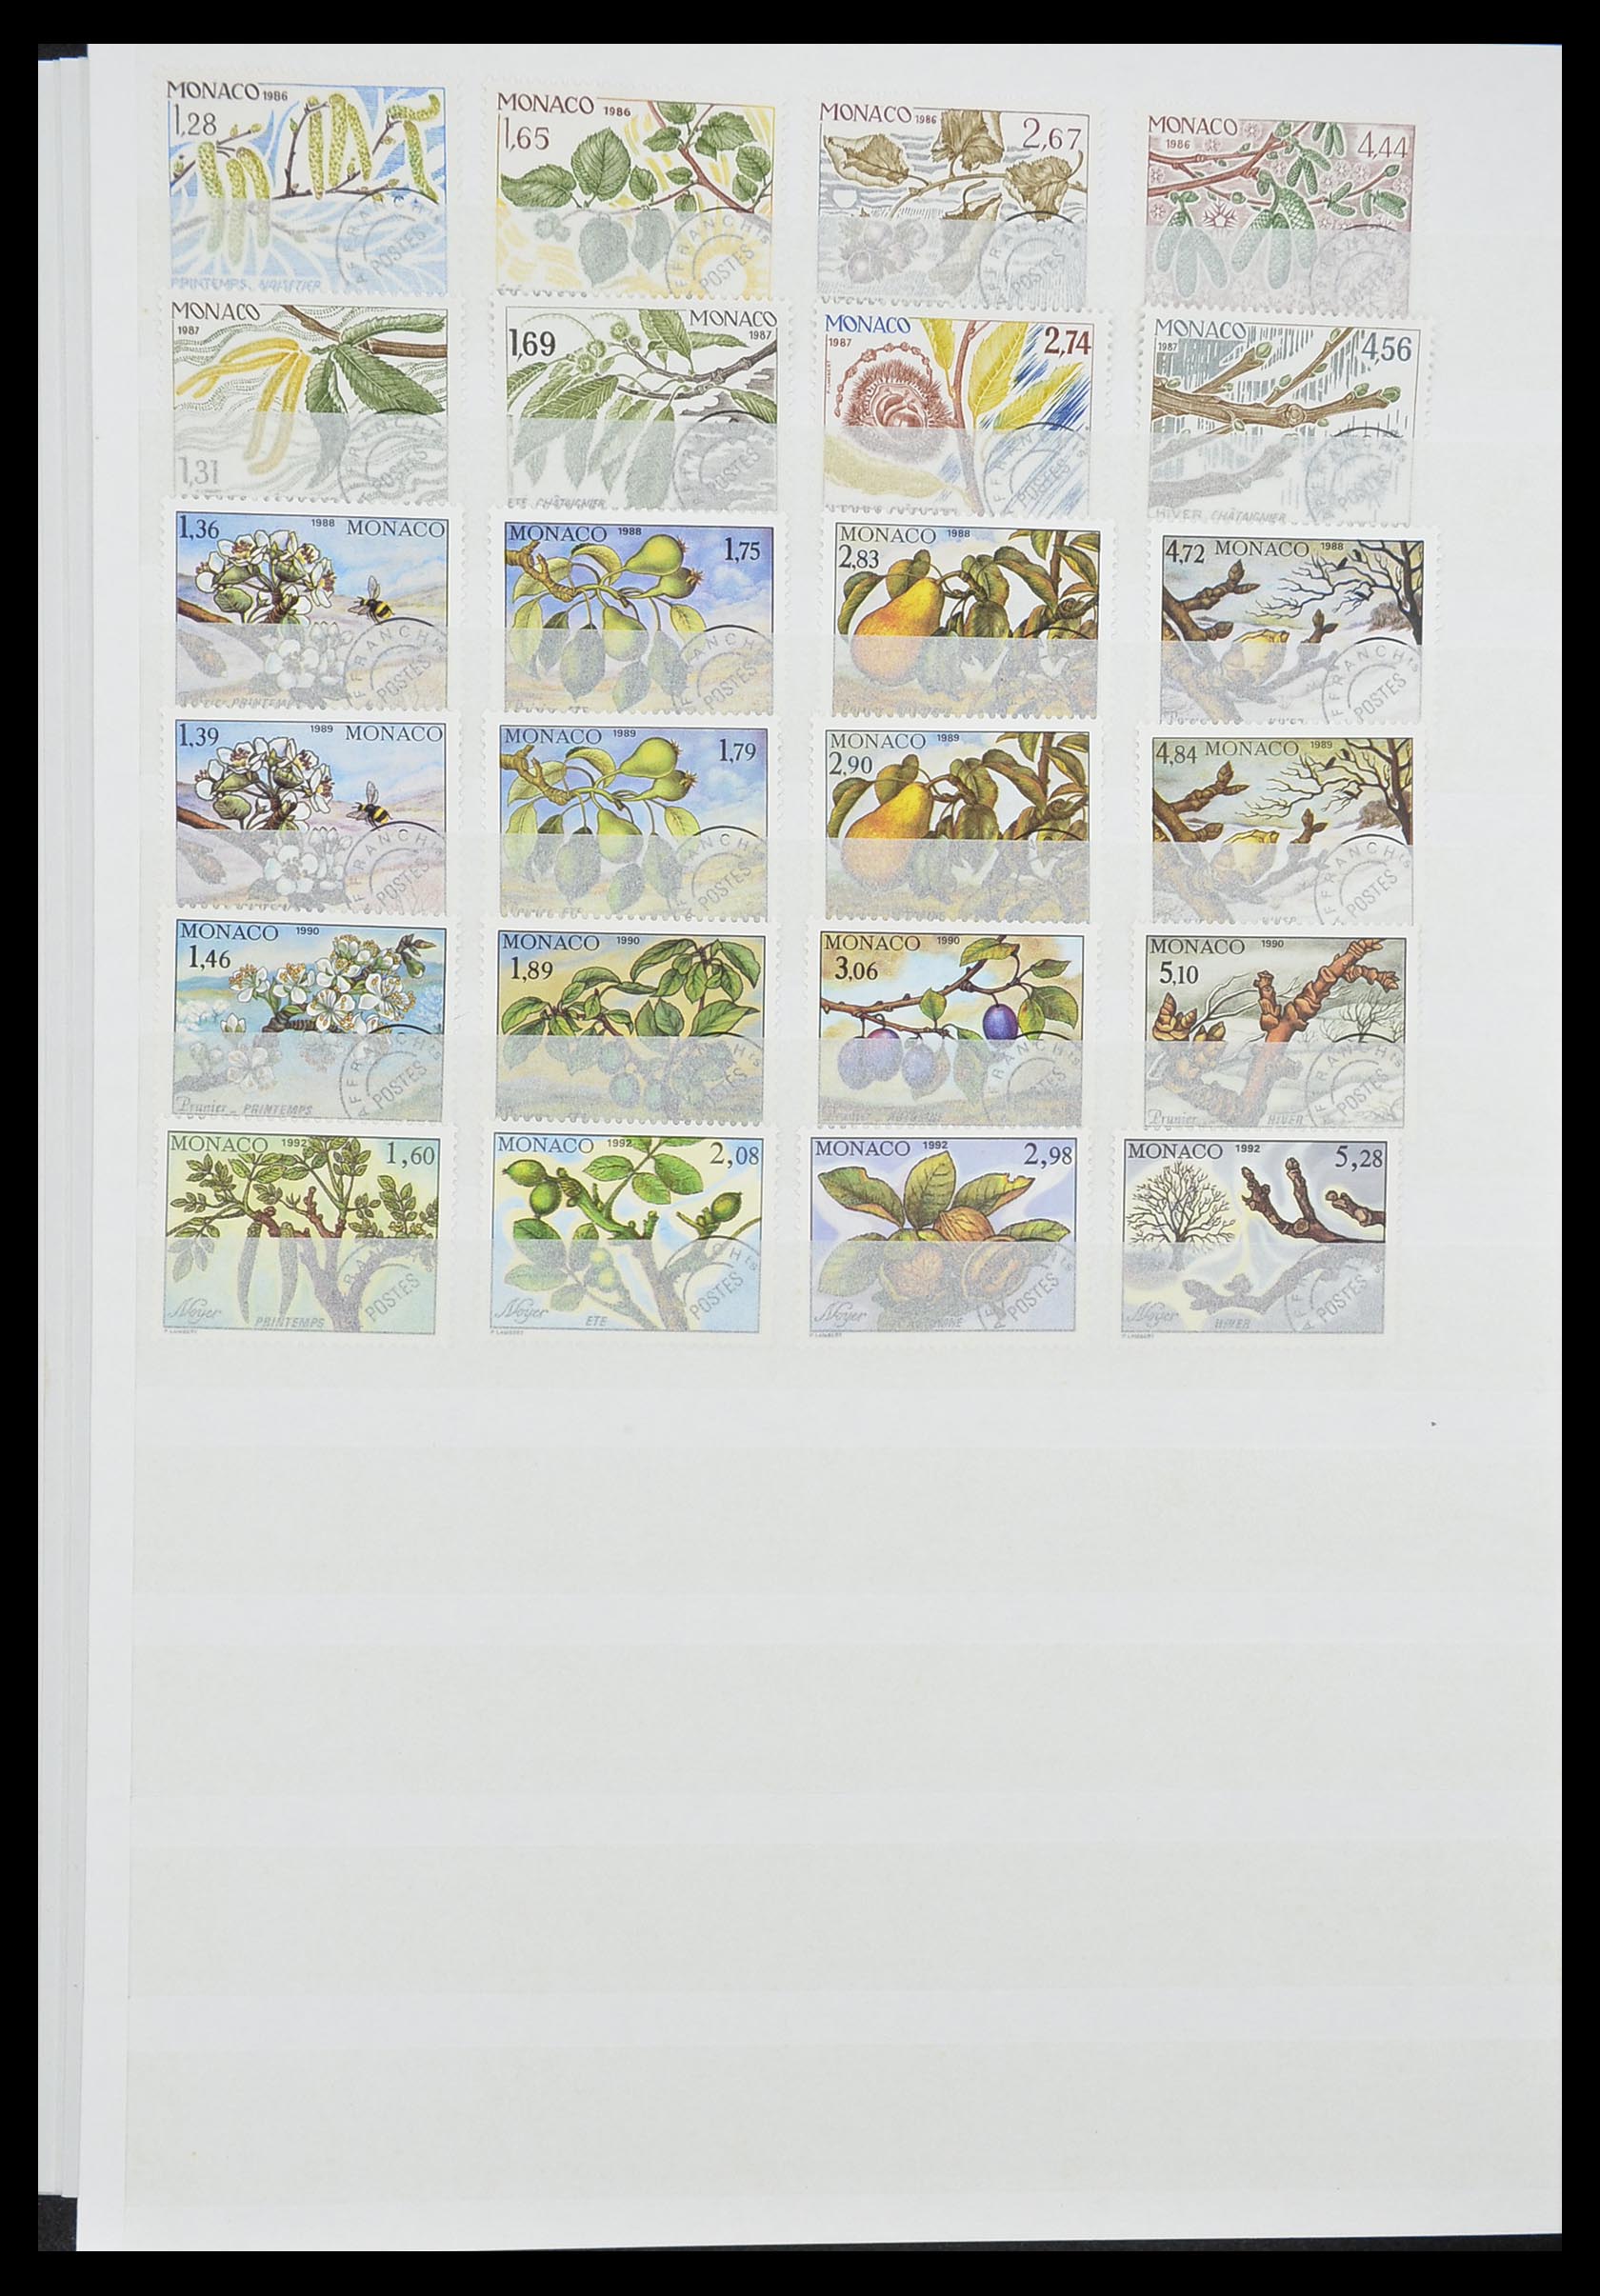 33833 048 - Stamp collection 33833 Monaco souvenir sheets 1979-2015.